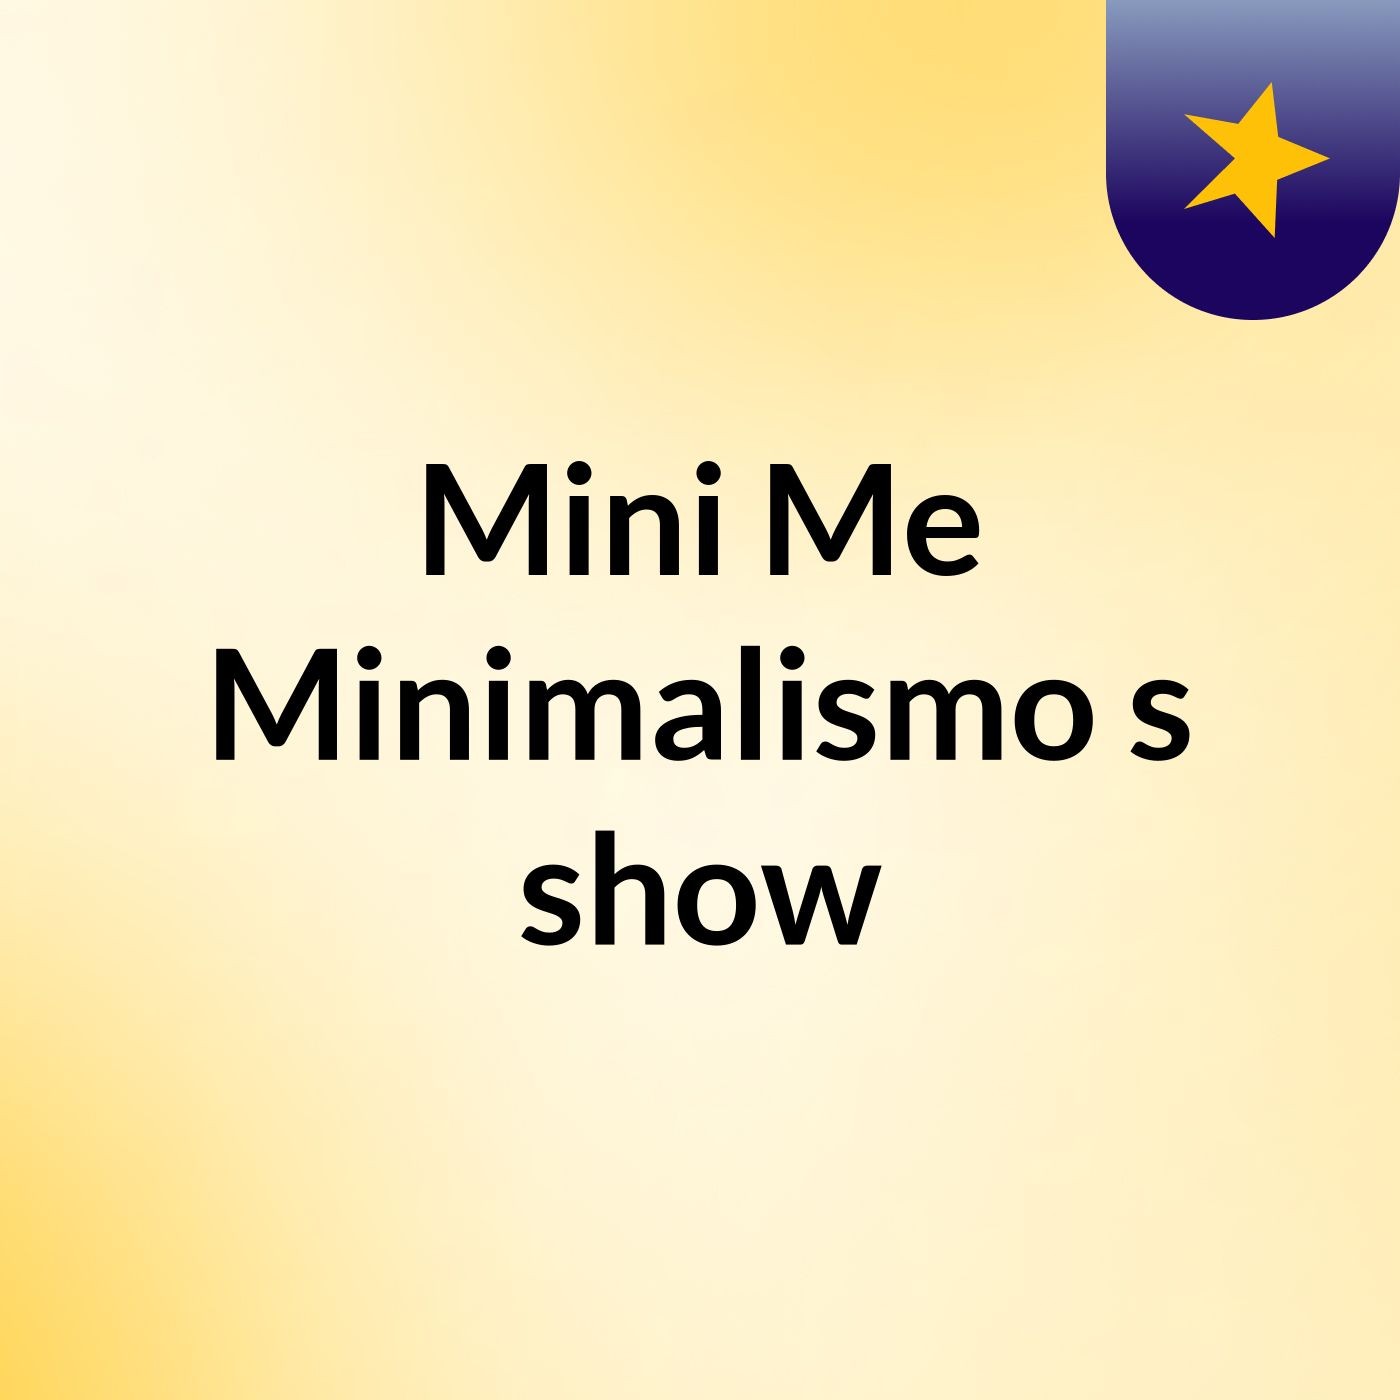 Mini Me Minimalismo's show